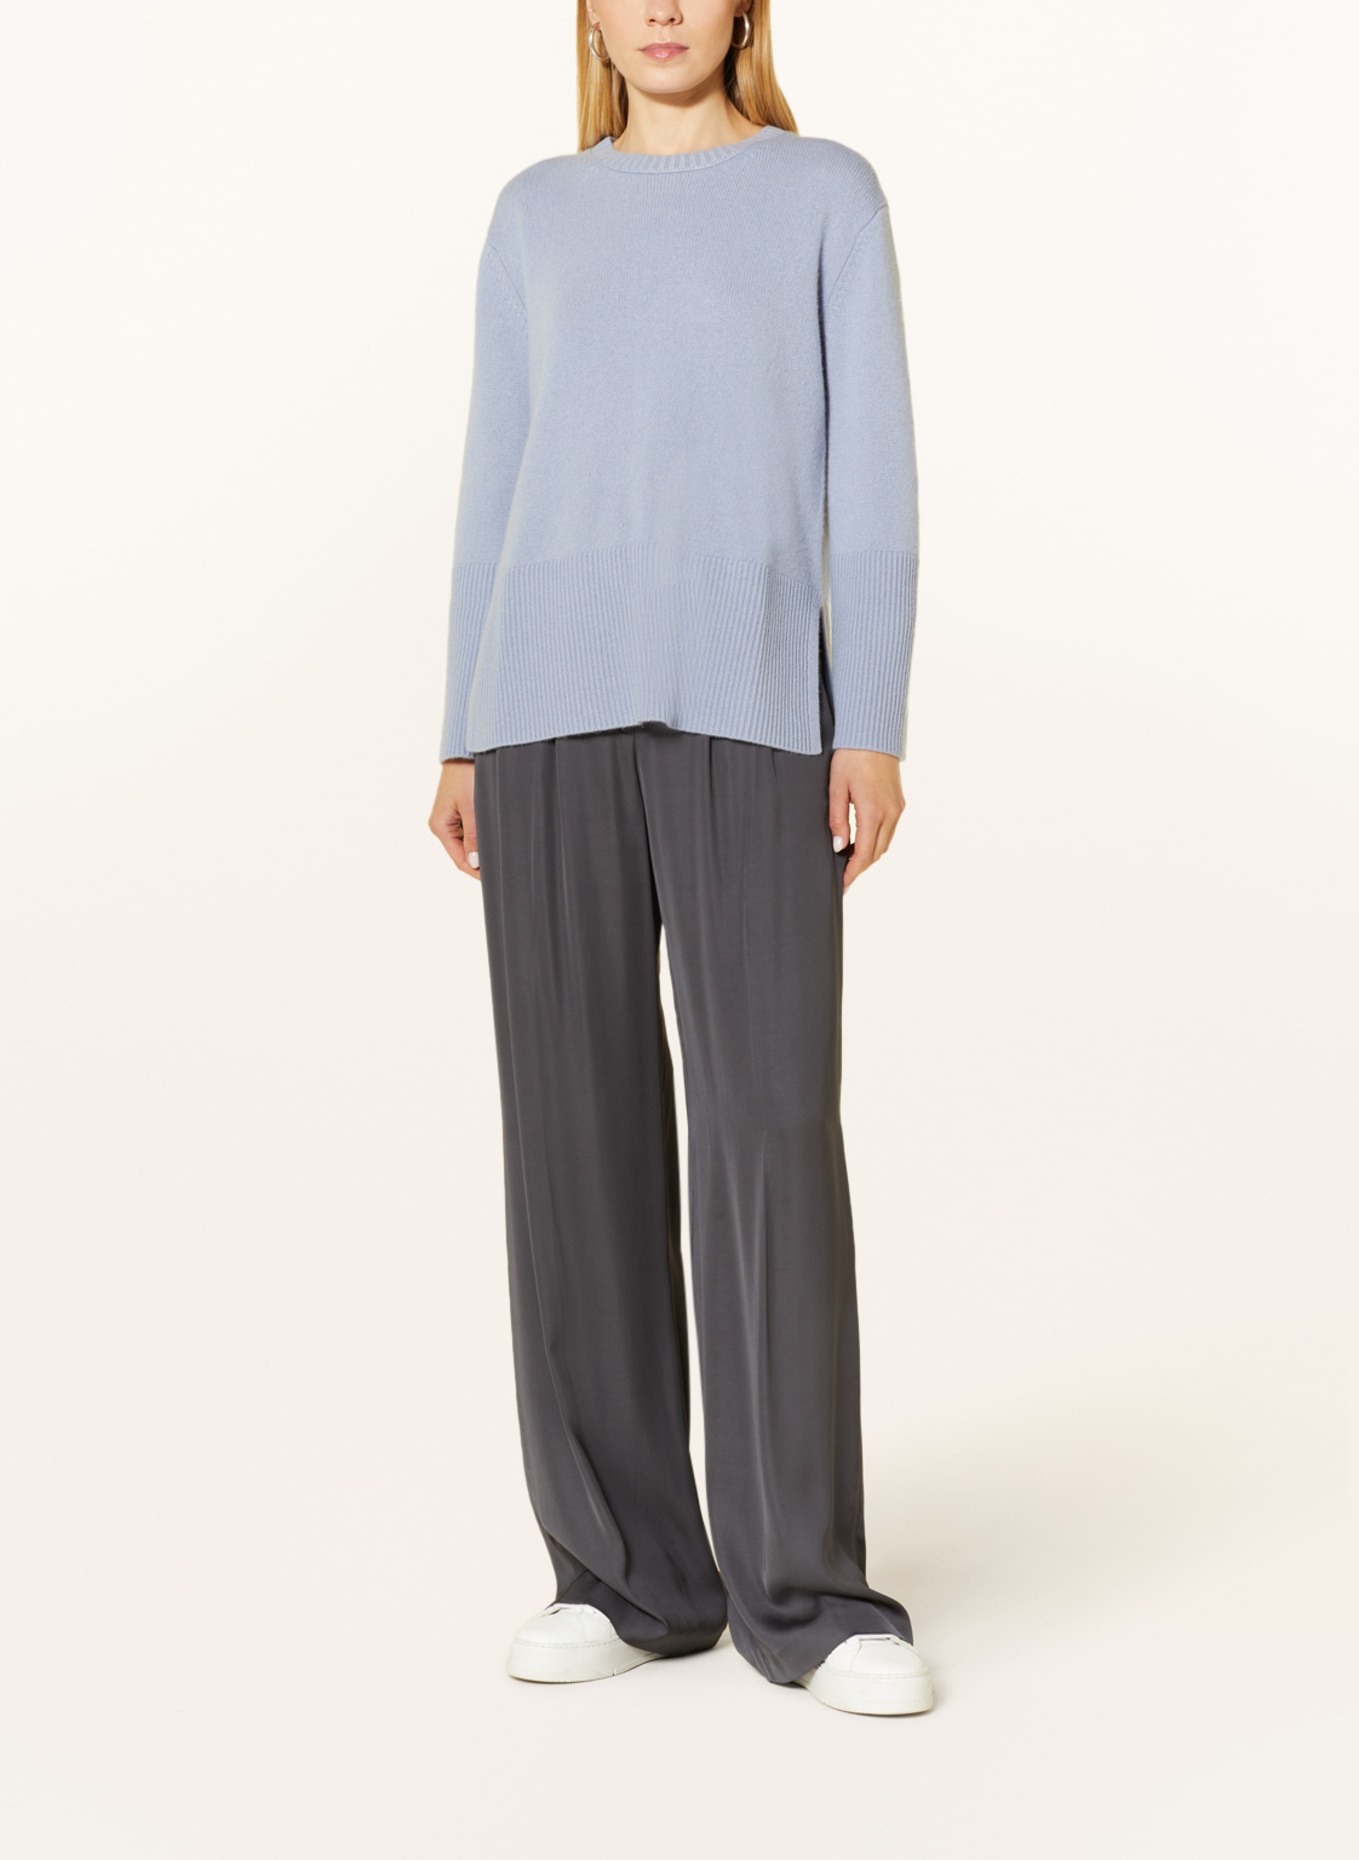 HEMISPHERE Cashmere-Pullover, Farbe: 5174 hellblau (Bild 2)